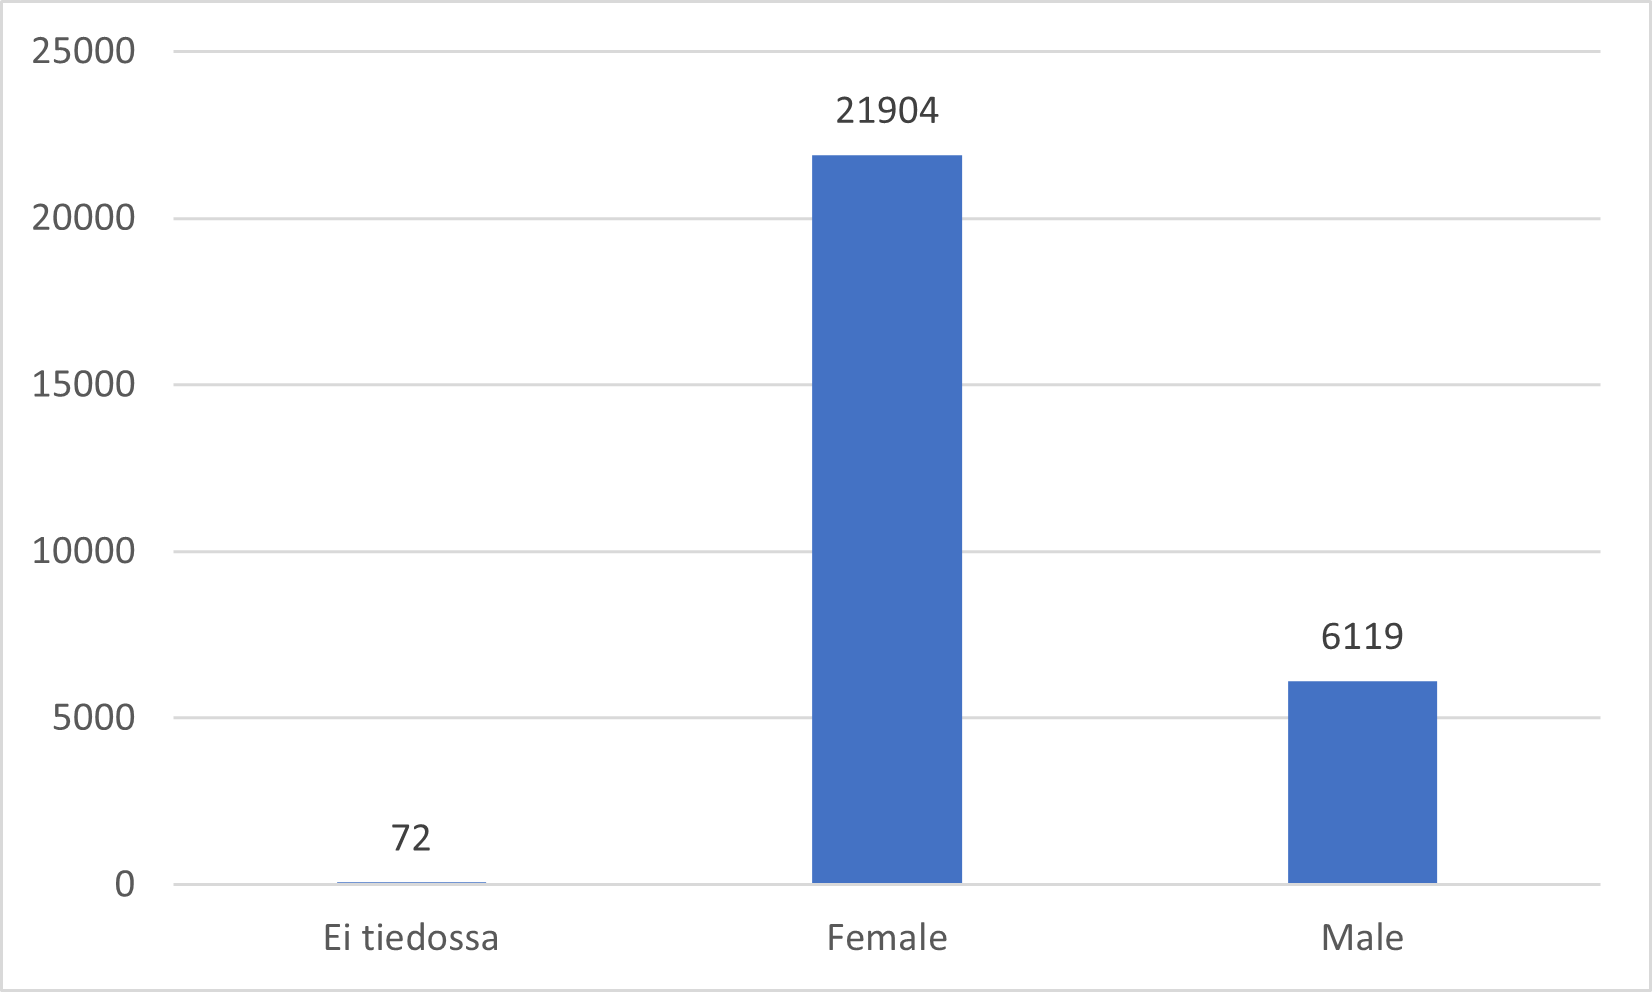 Könsfördelningen bland patienterna i anmälningarna: ingen uppgift 72, kvinna 21904, man 6119.